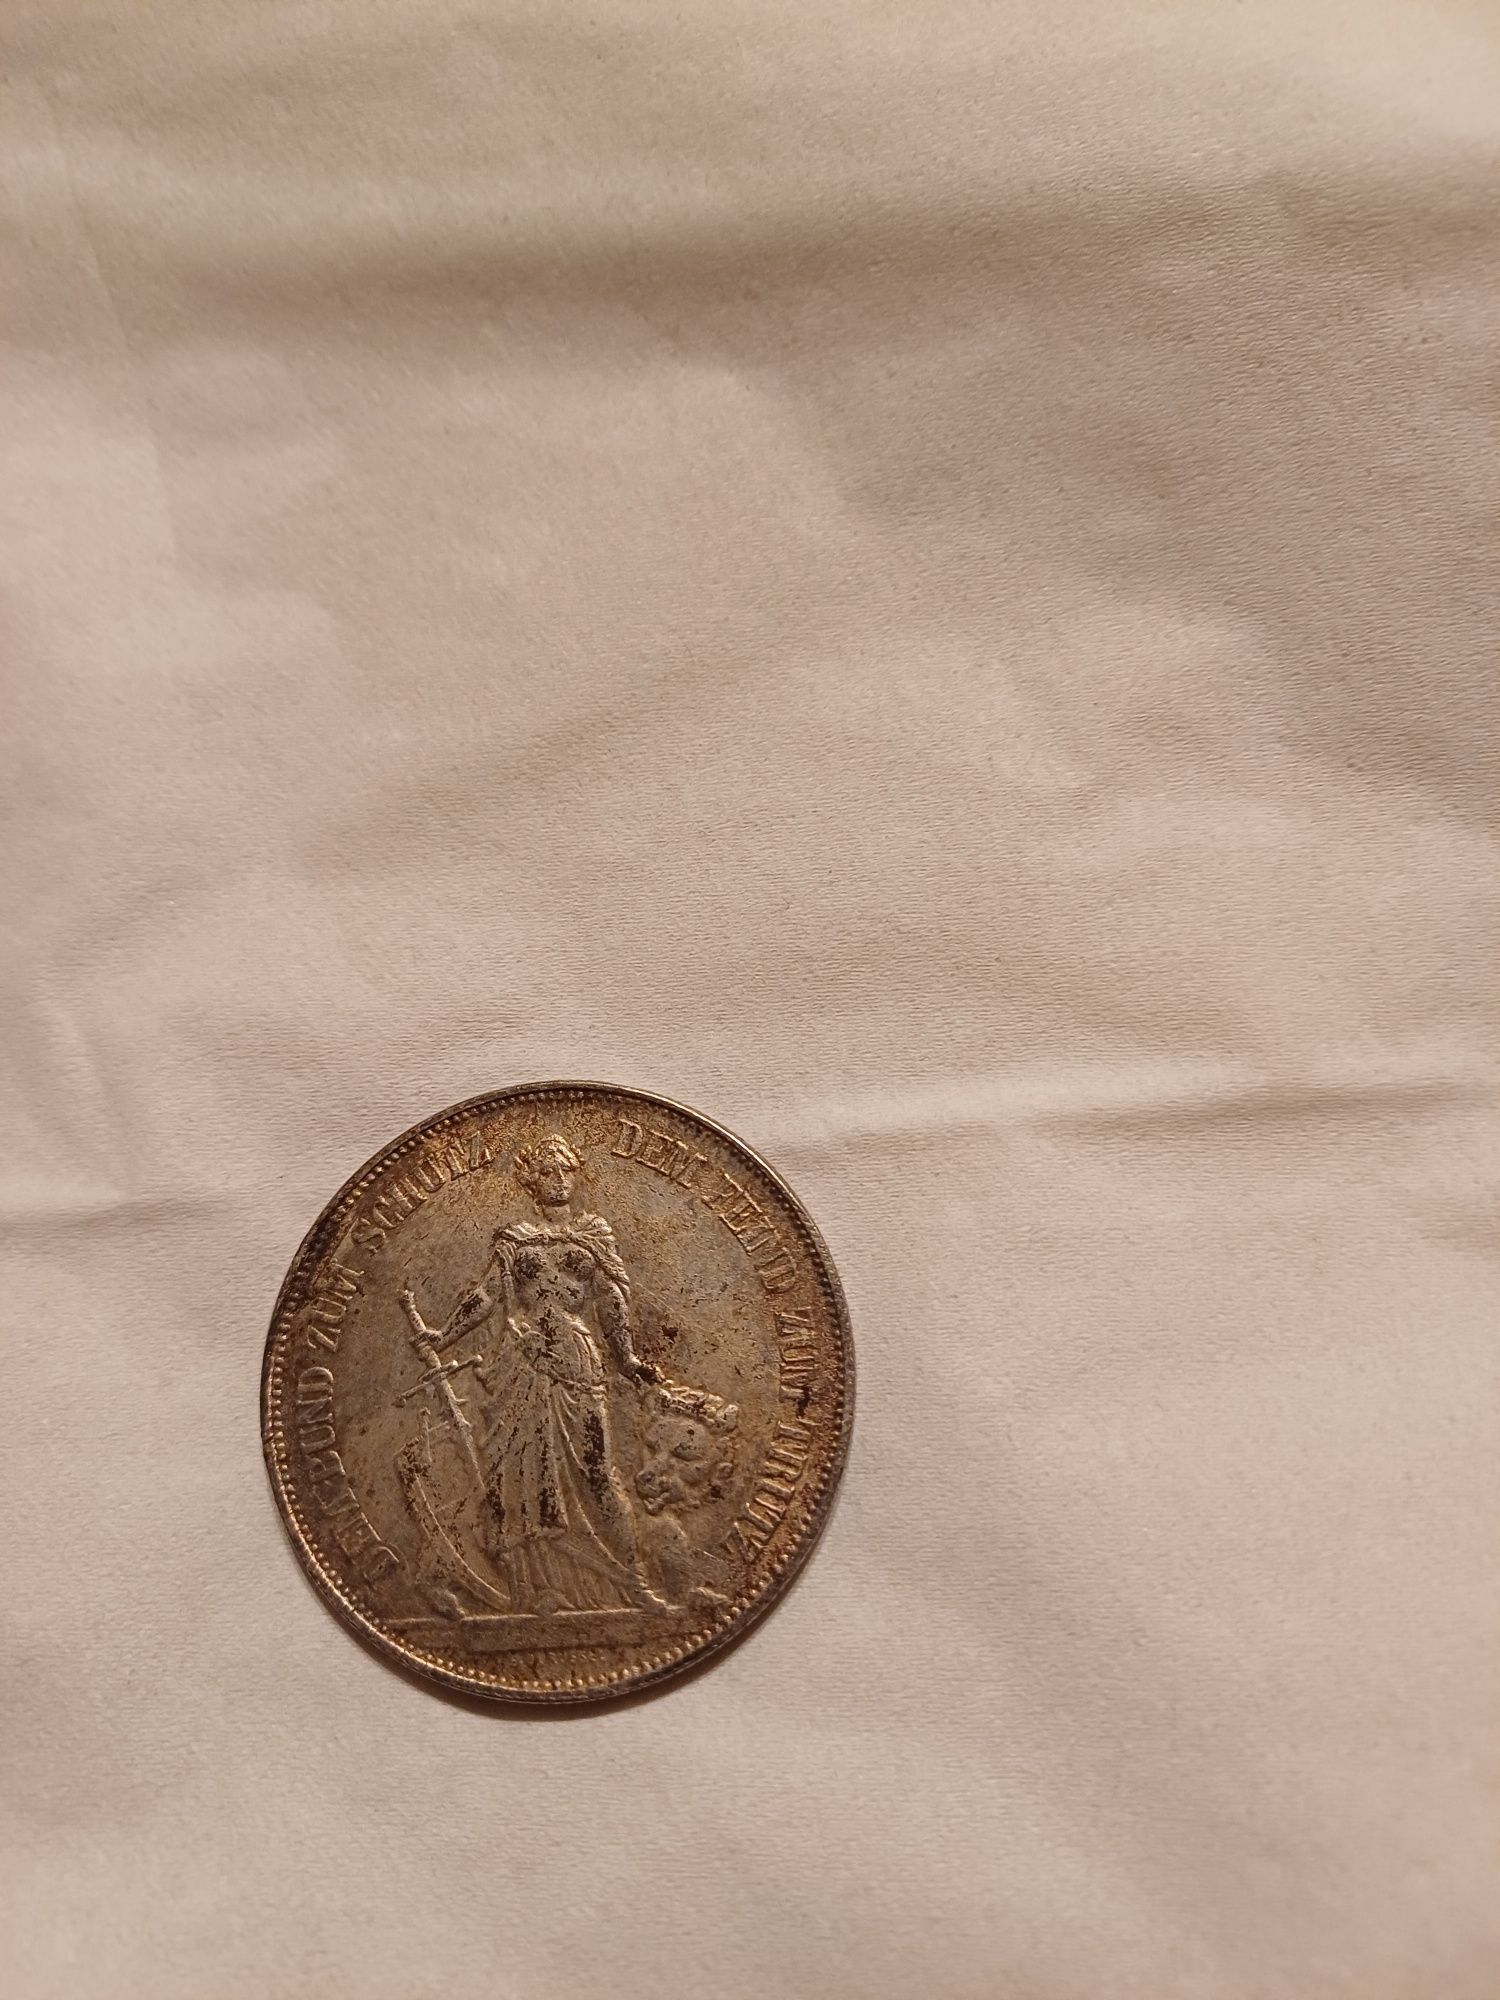 Vând moneda veche an 1885